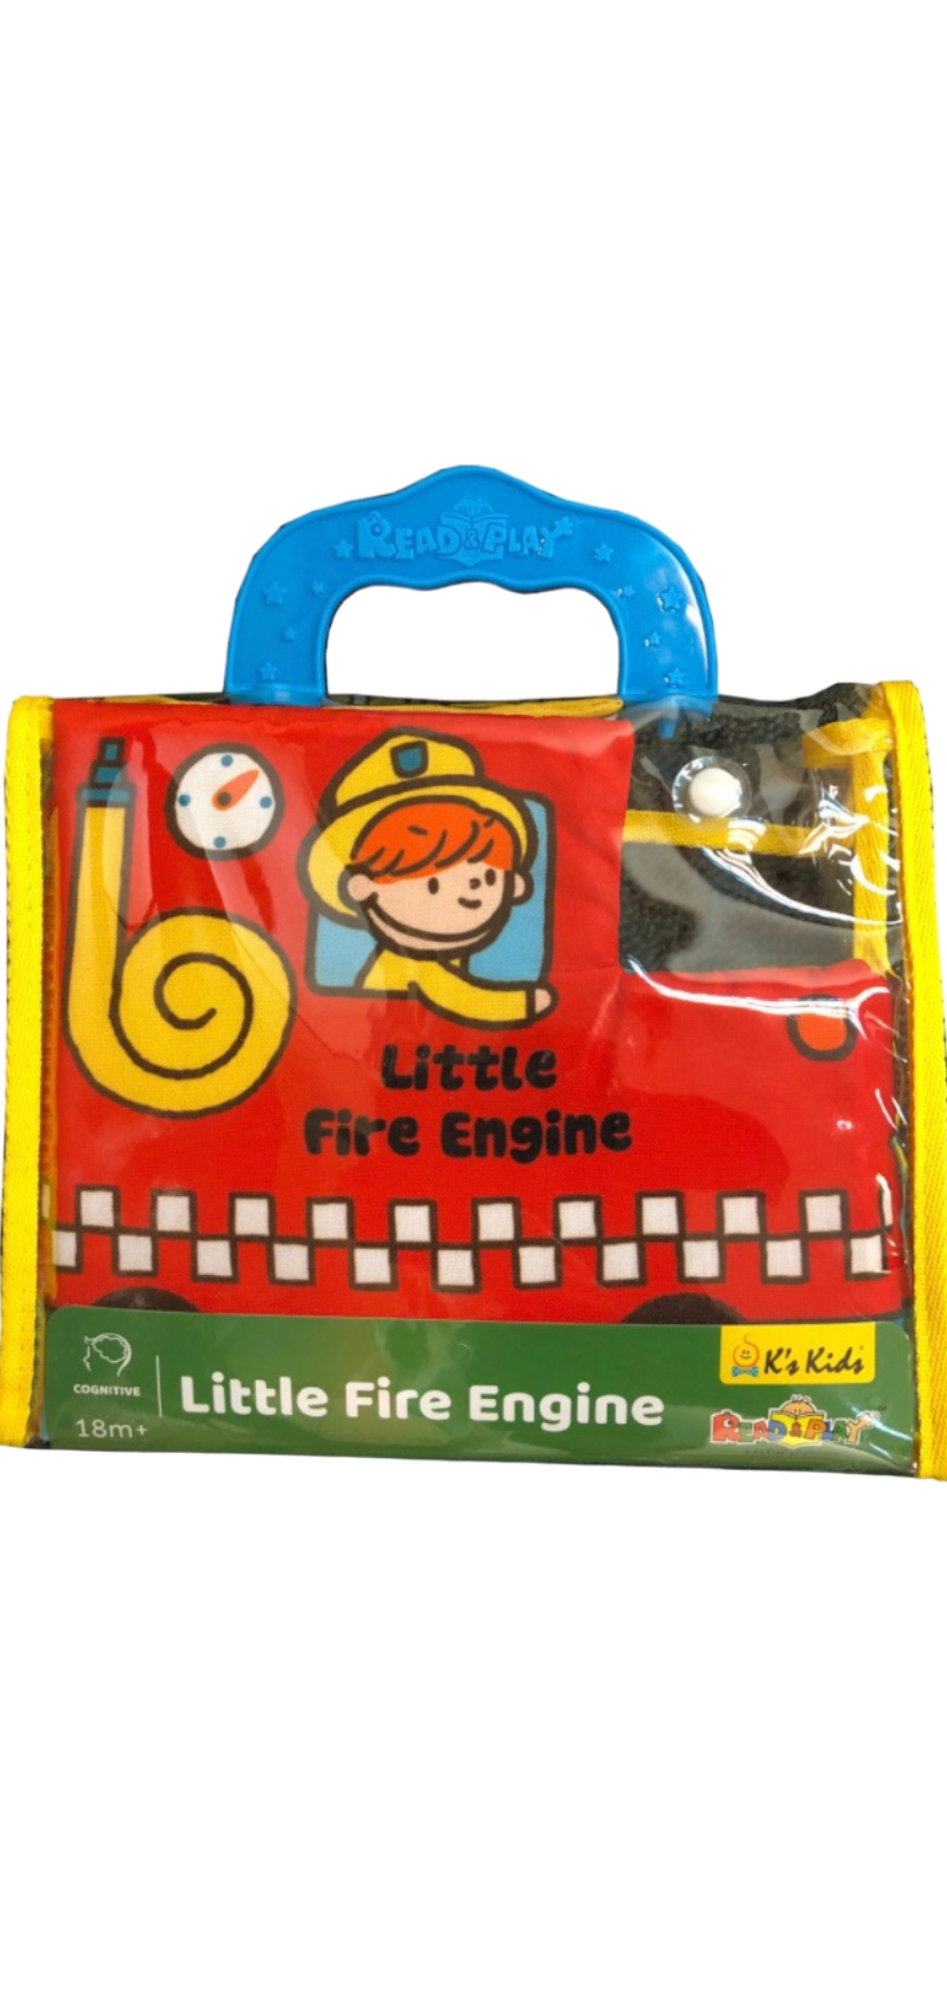 K KIDS LITTLE FIRE ENGINE